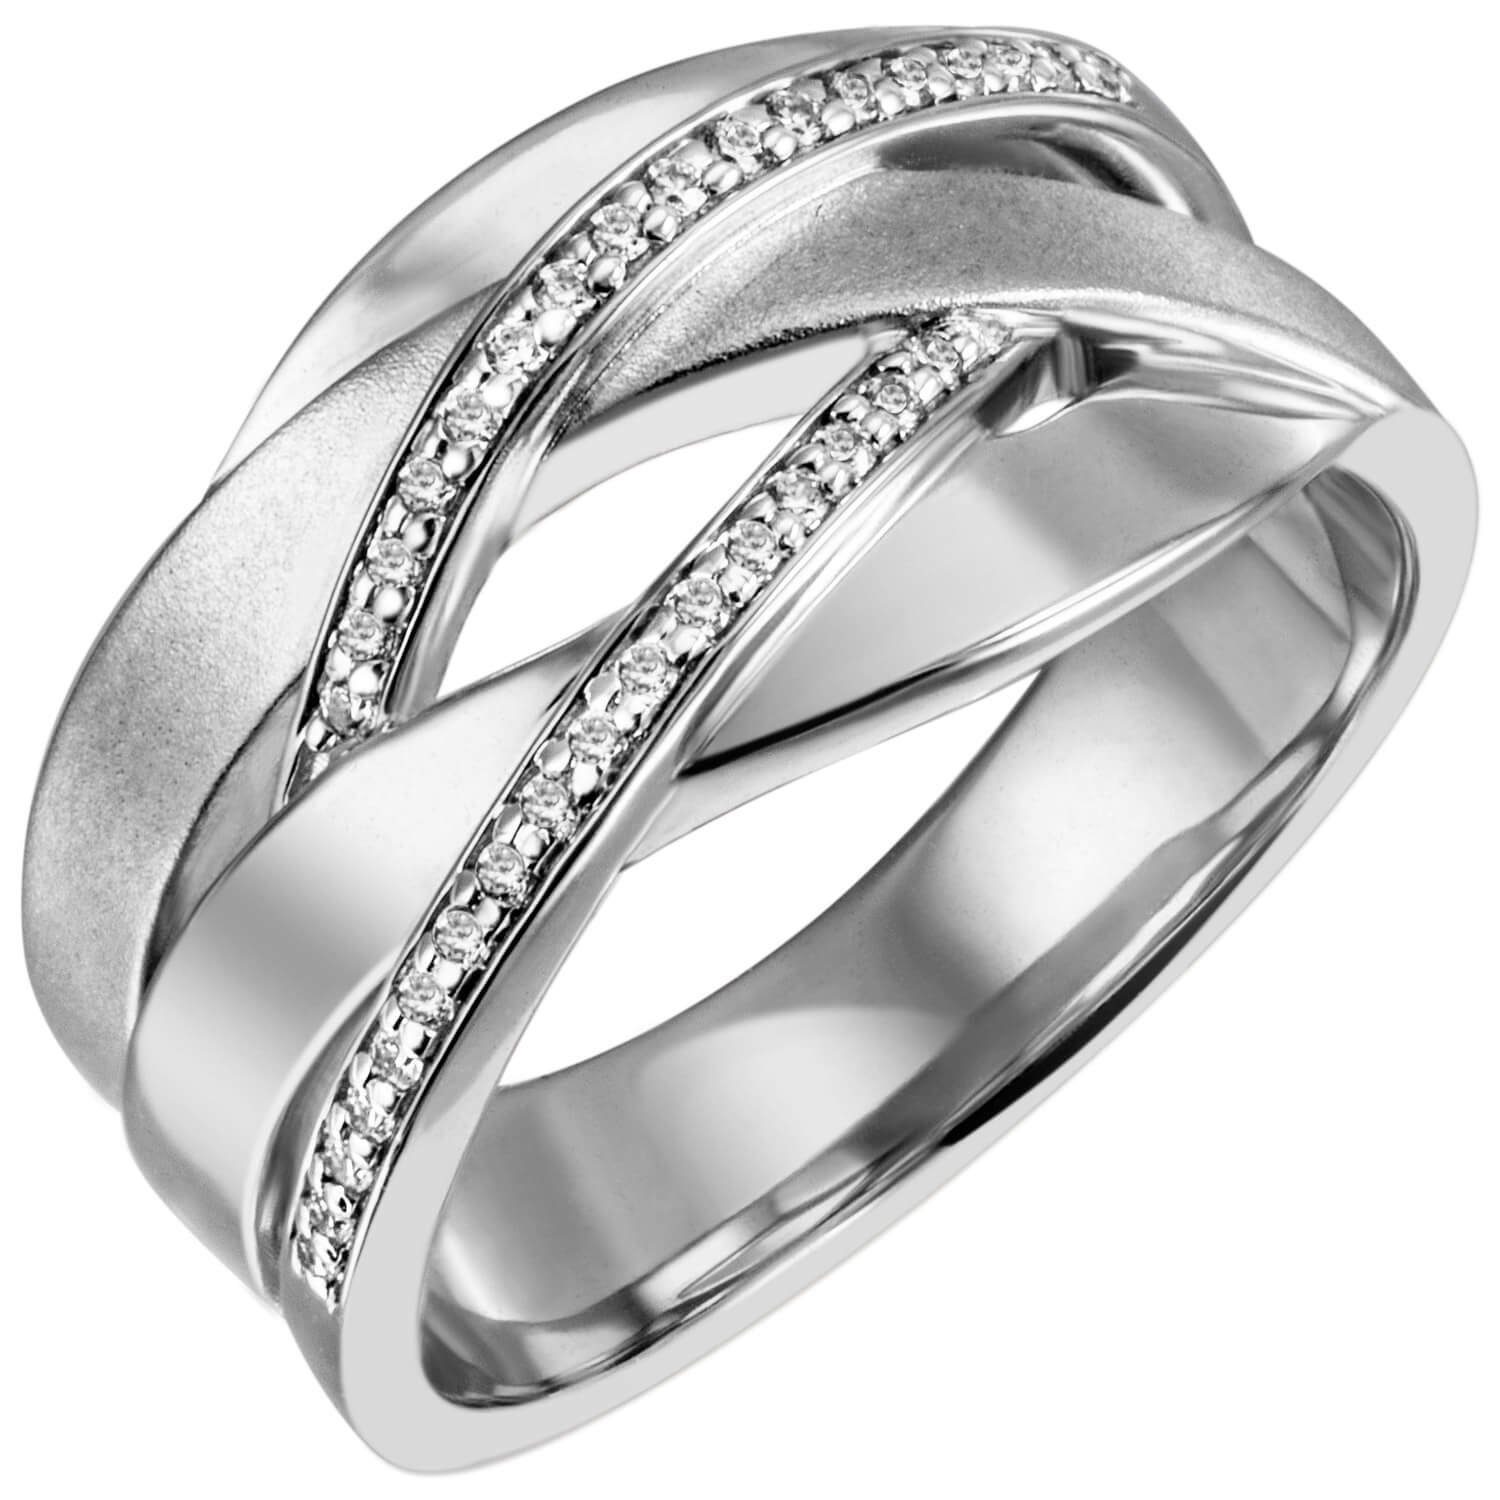 Schmuck Krone Silberring Breiter Ring mit 34 Zirkonia, 925 Silber, Silber 925